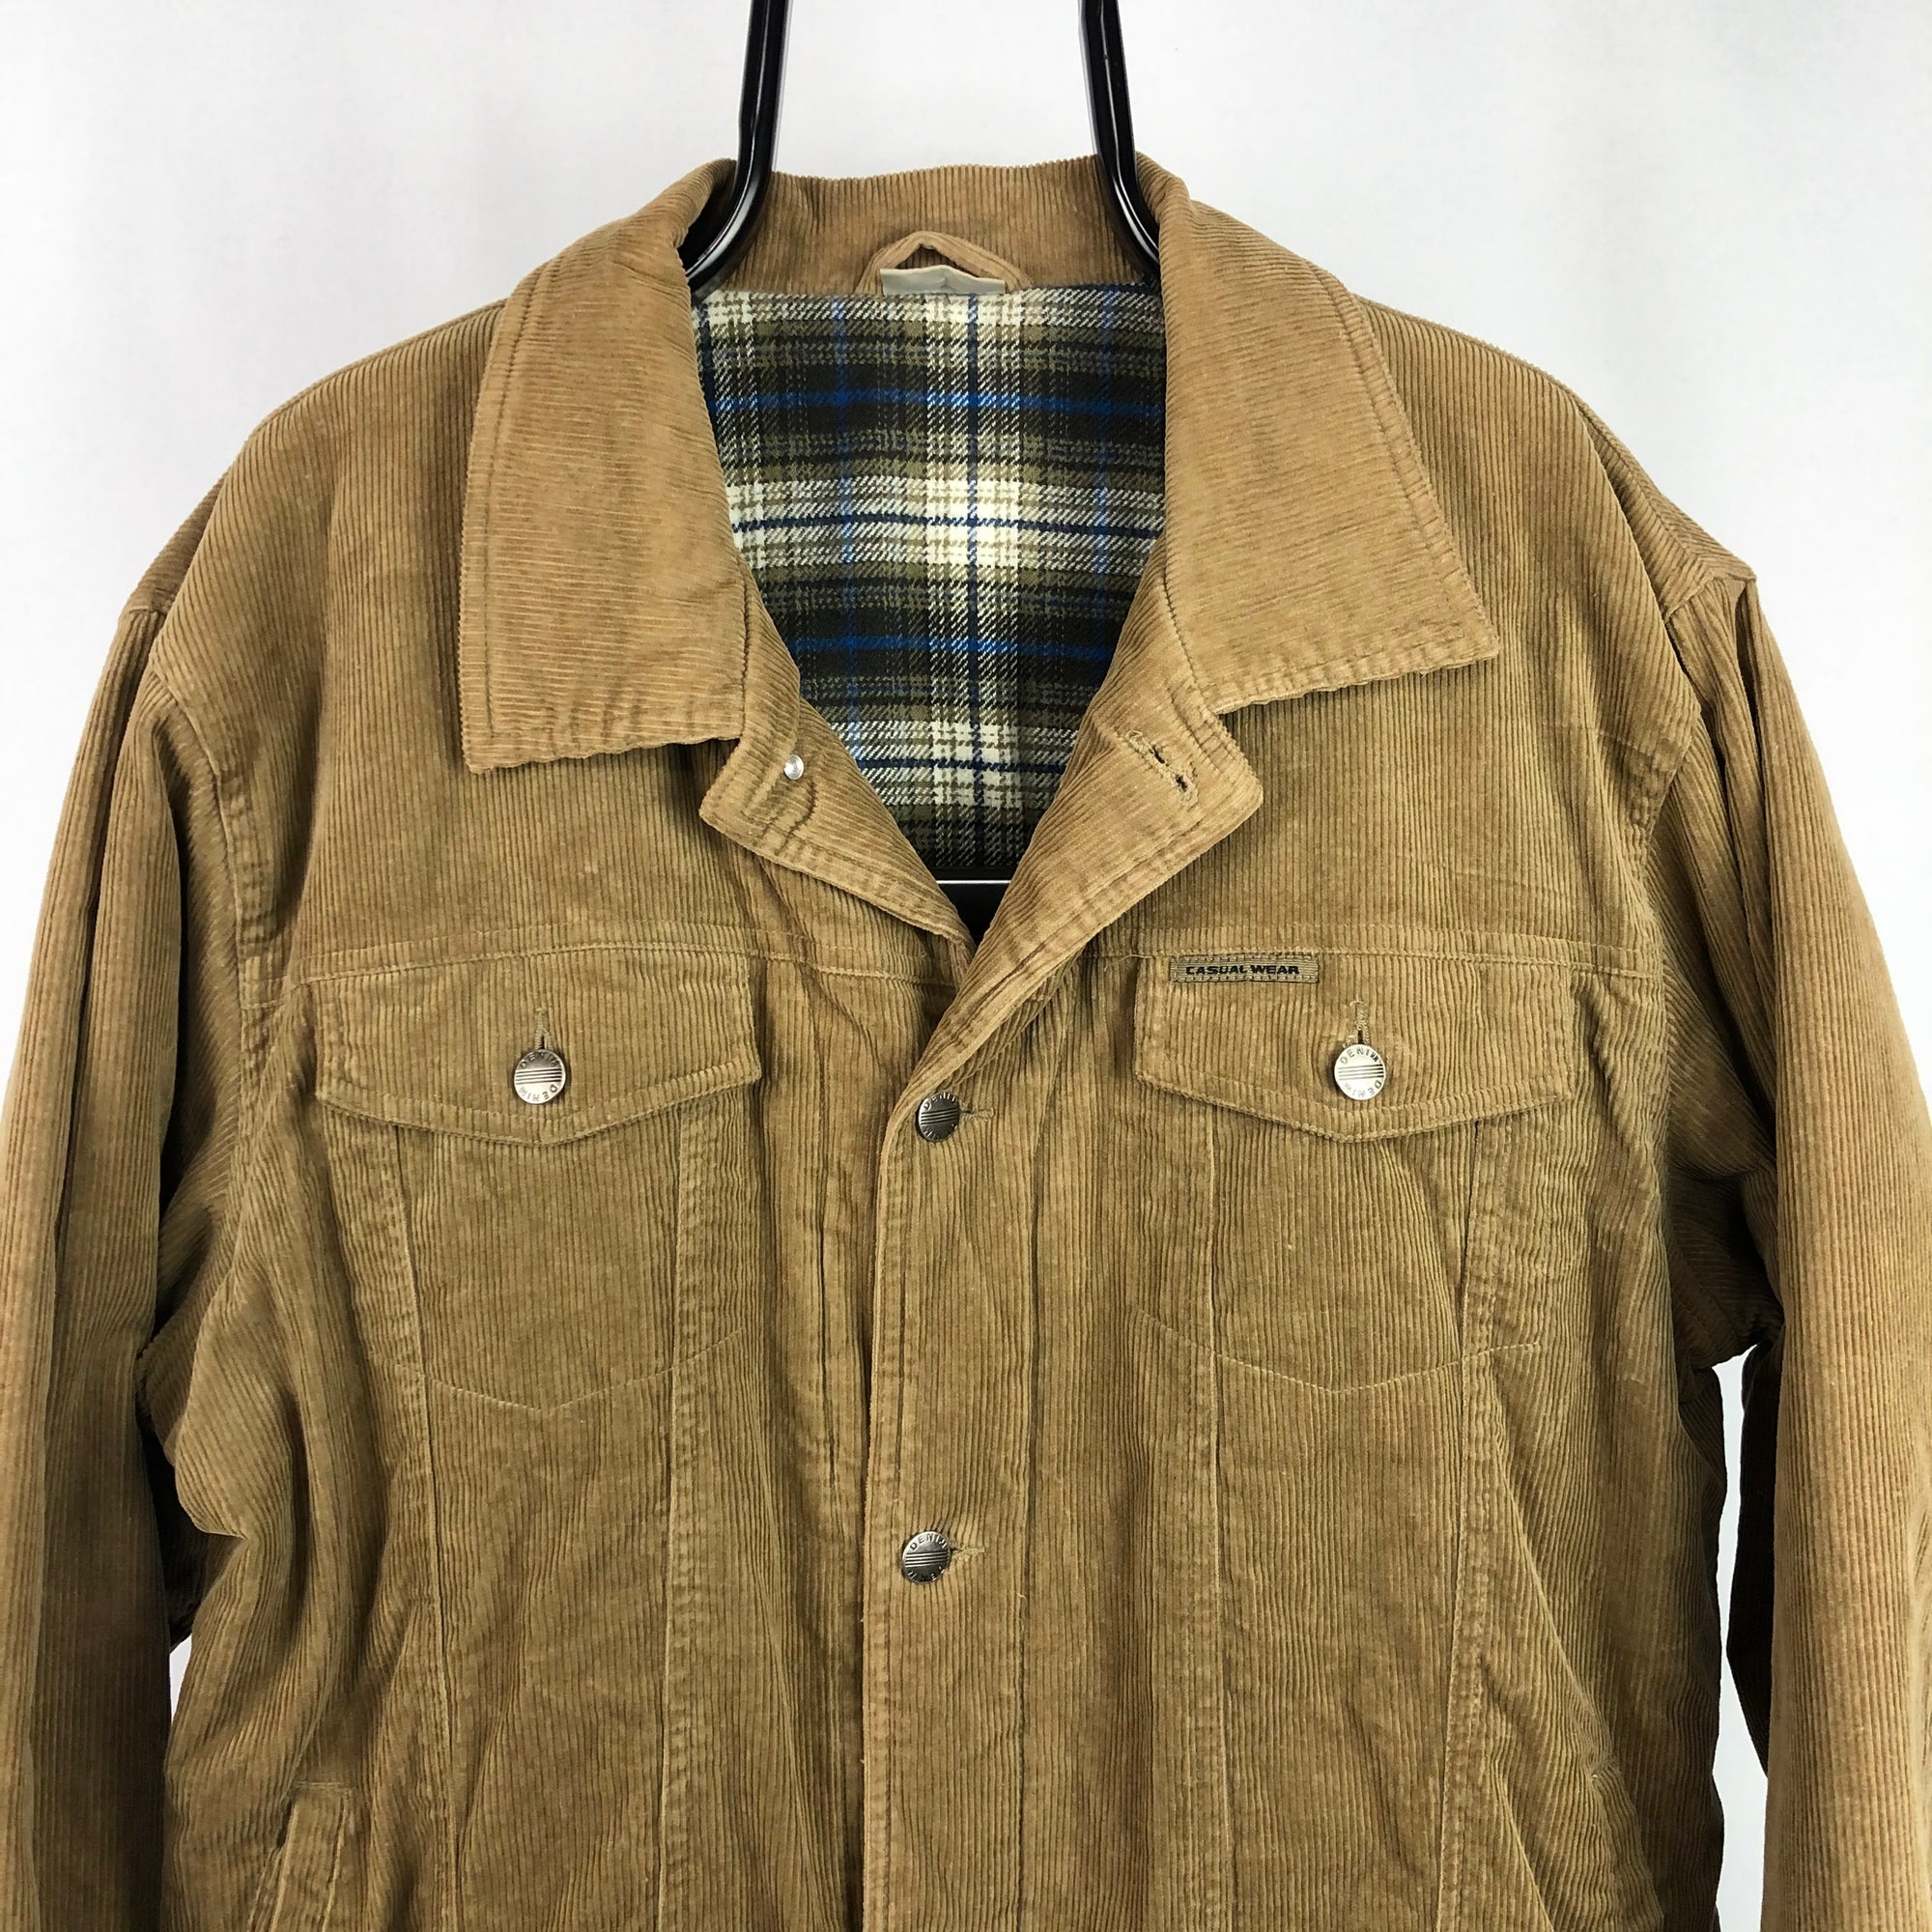 Vintage Plaid-Lined Corduroy Jacket - Men's Large/Women's XL